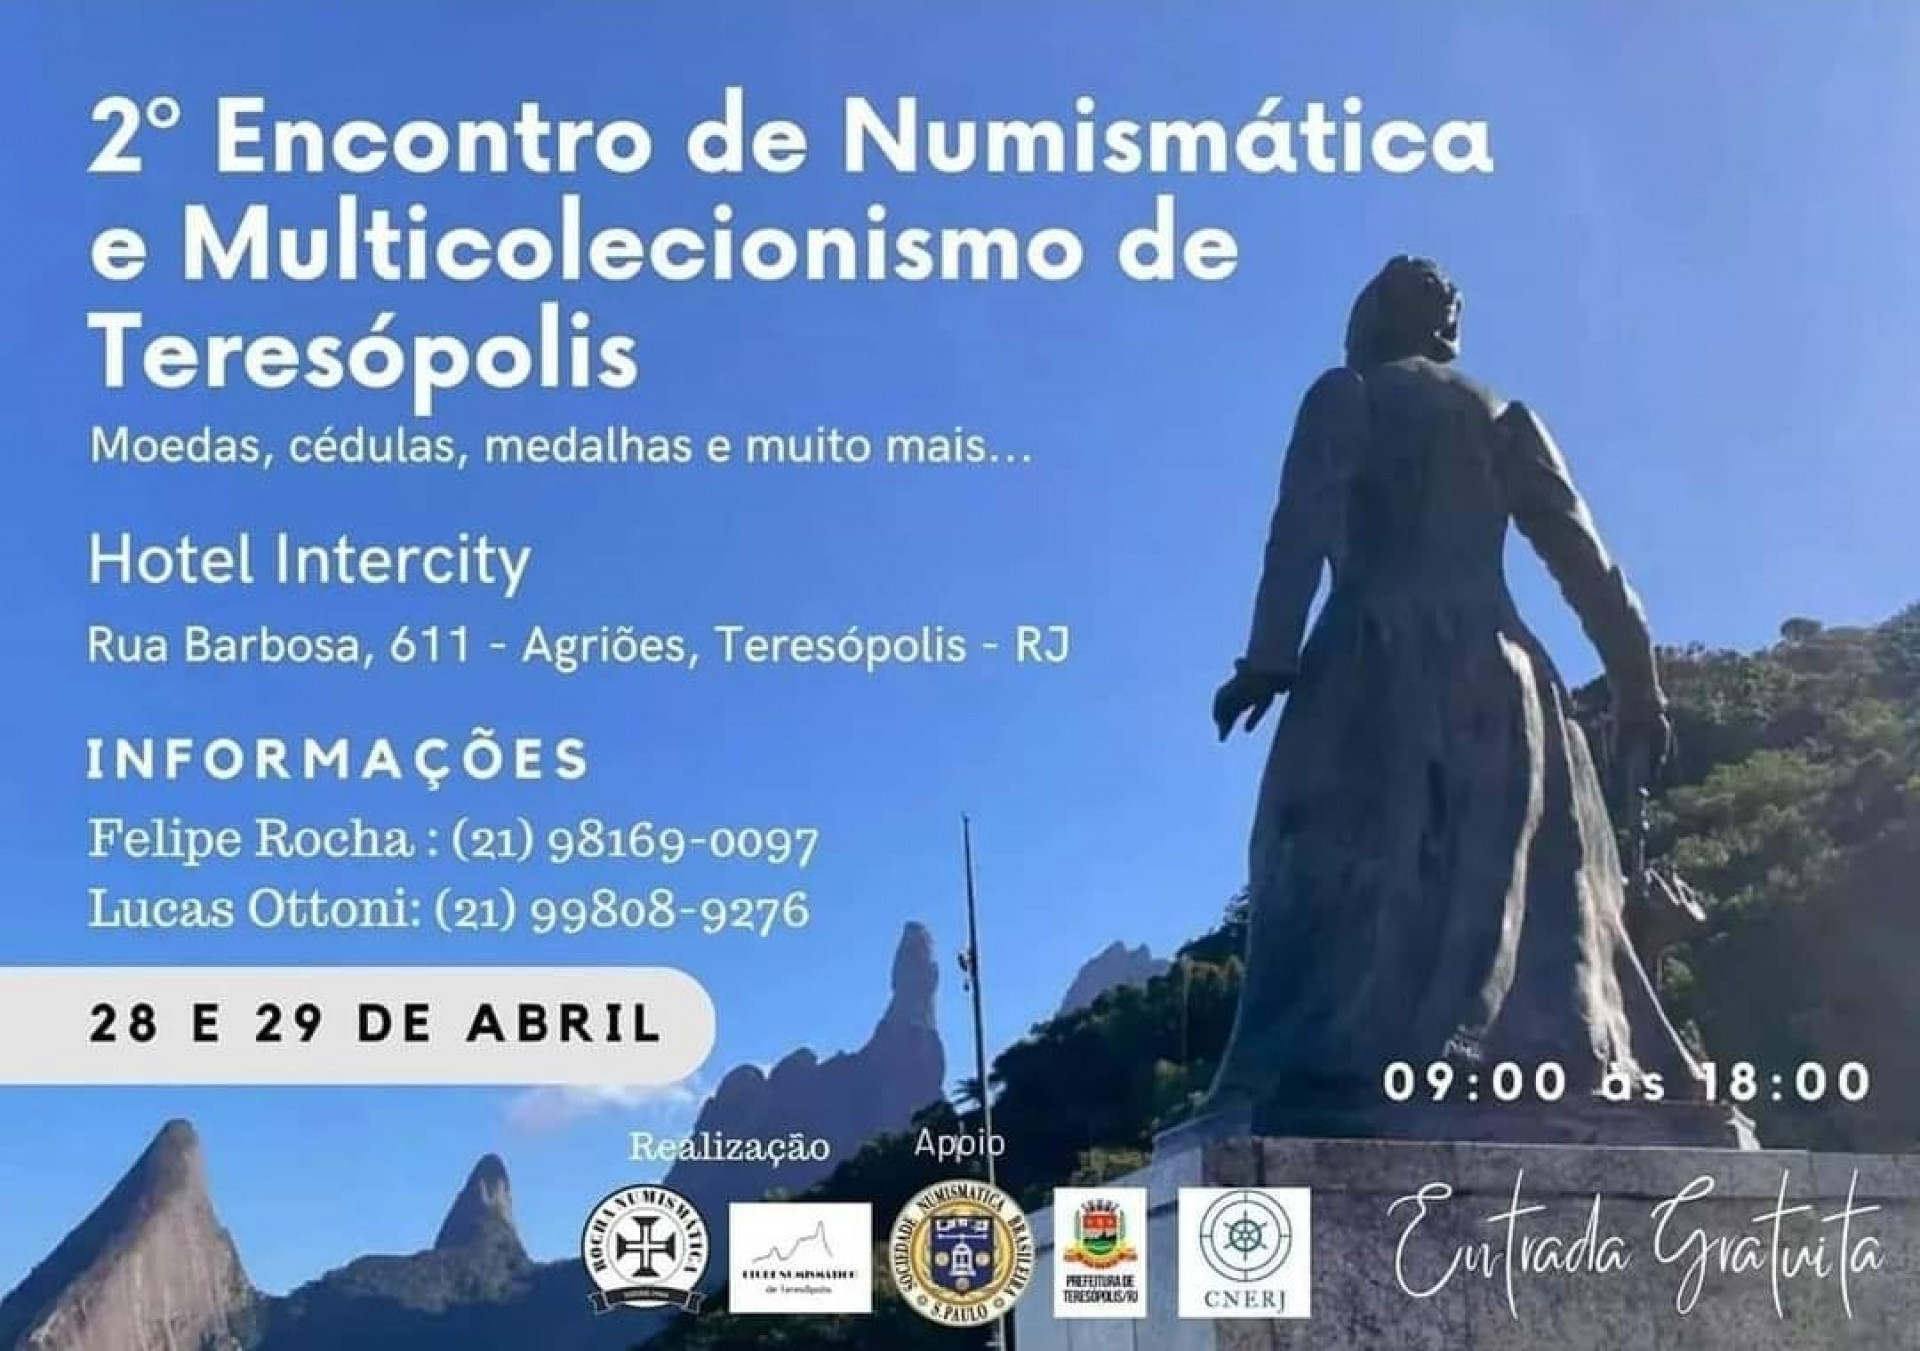 Encontro de  Numismática acontece em Teresópolis neste final de semana - Divulgação